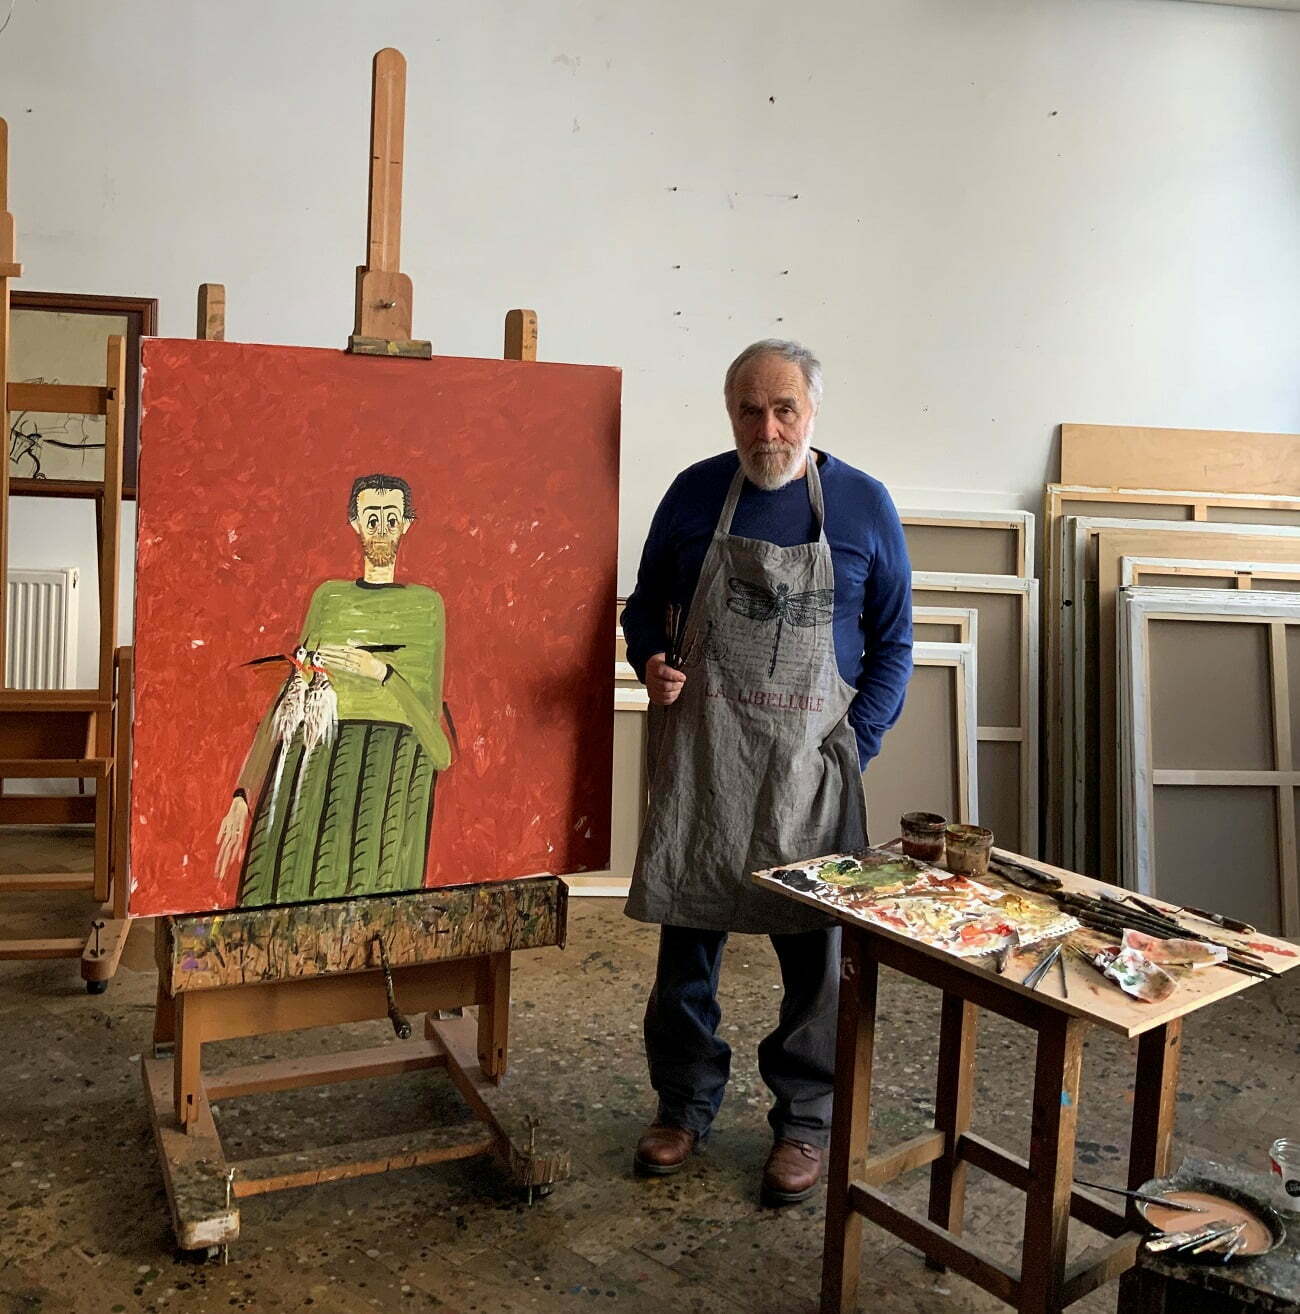 INTERVIU – Sorin Ilfoveanu: Pictura este o meserie pe care o deprinzi prin exercițiu. Tinerii artiști trebuie să lucreze pornind de la ce simt, nu de la ce se face